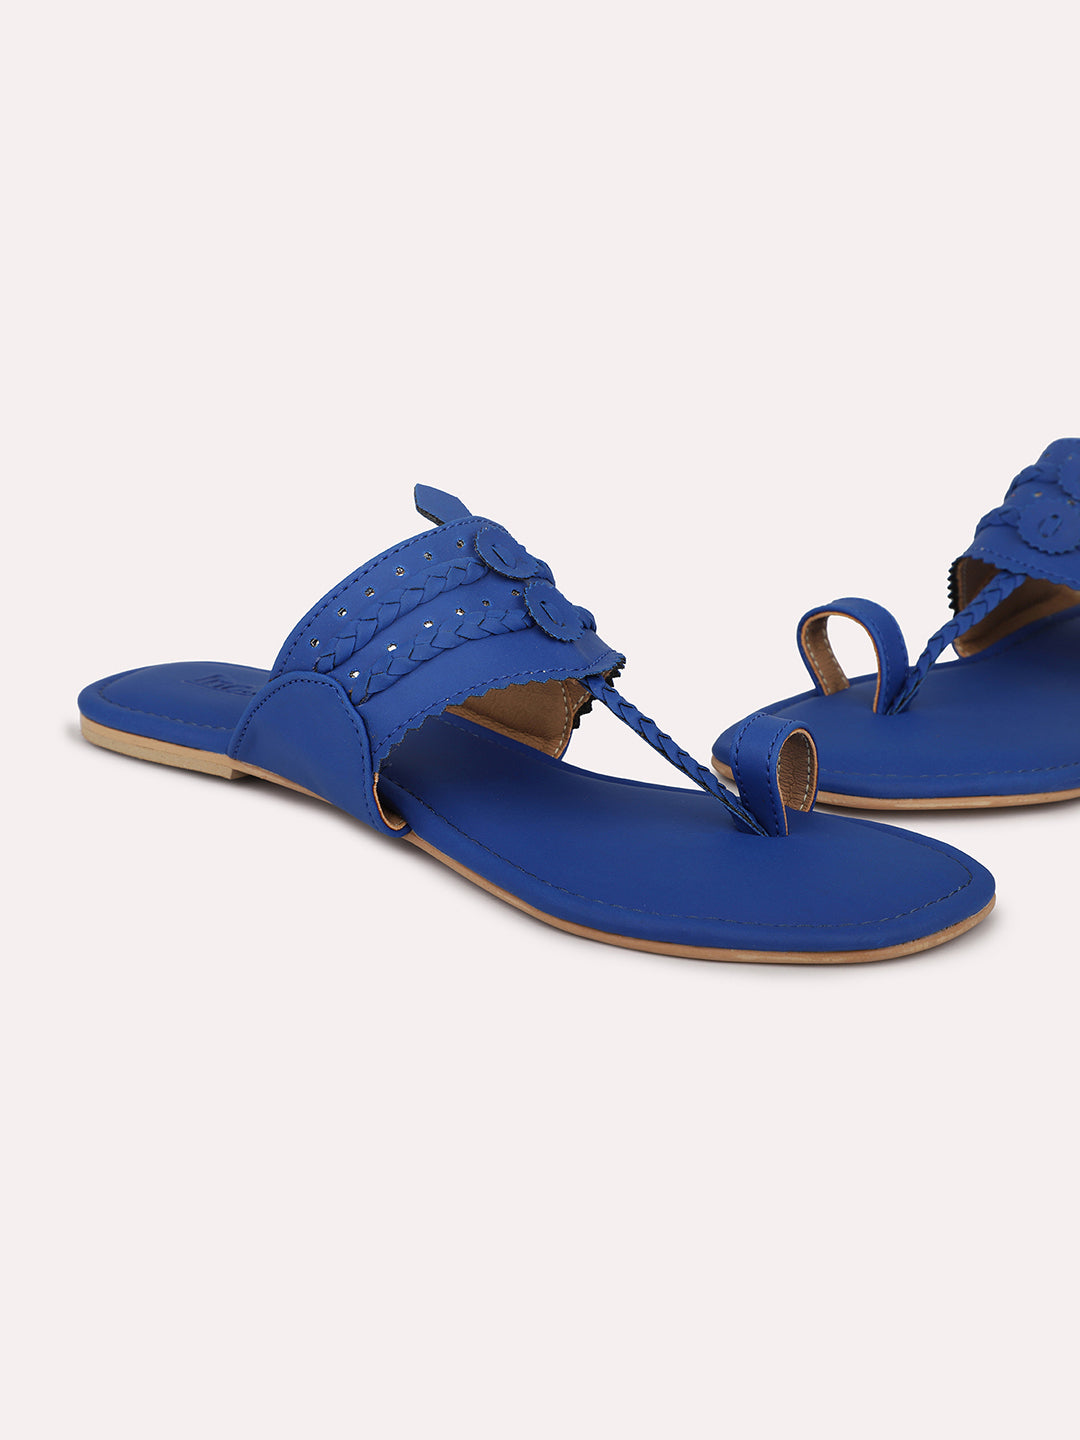 Satin Toe Loop Flat Sandals - Bright Blue Satin | Boden EU